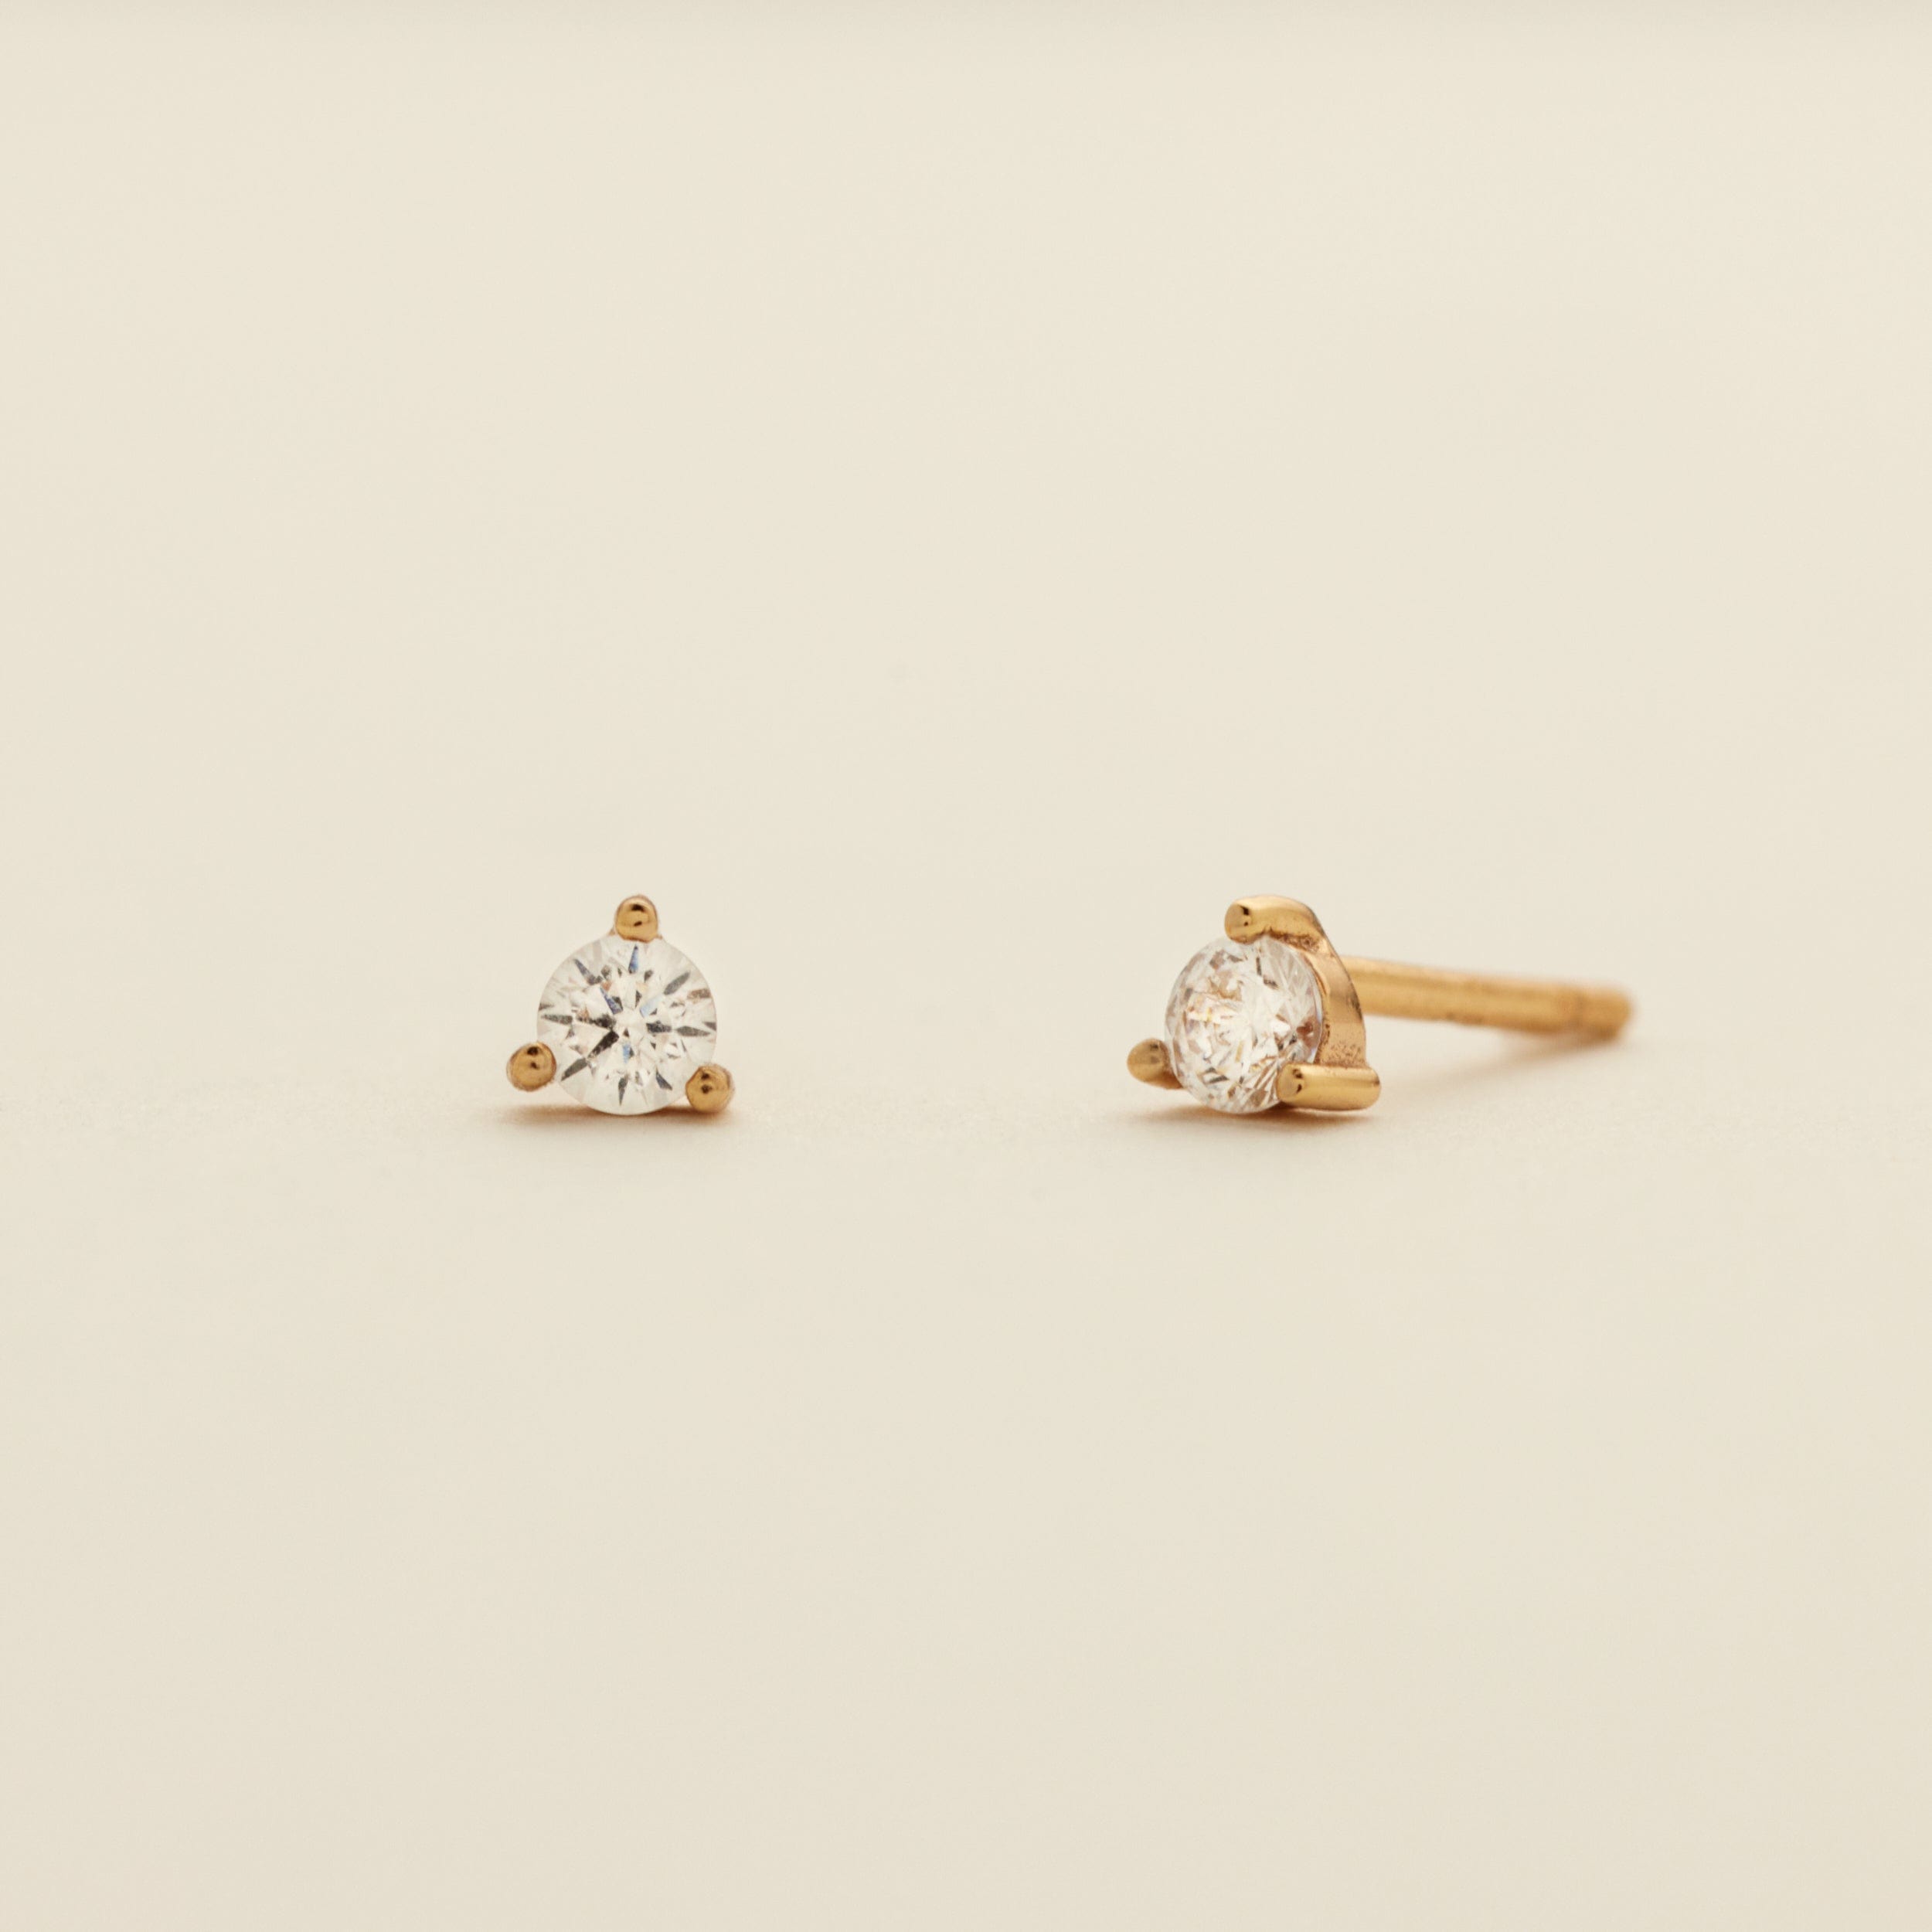 Luxe 3-prong Stud Earrings Gold Vermeil Earring